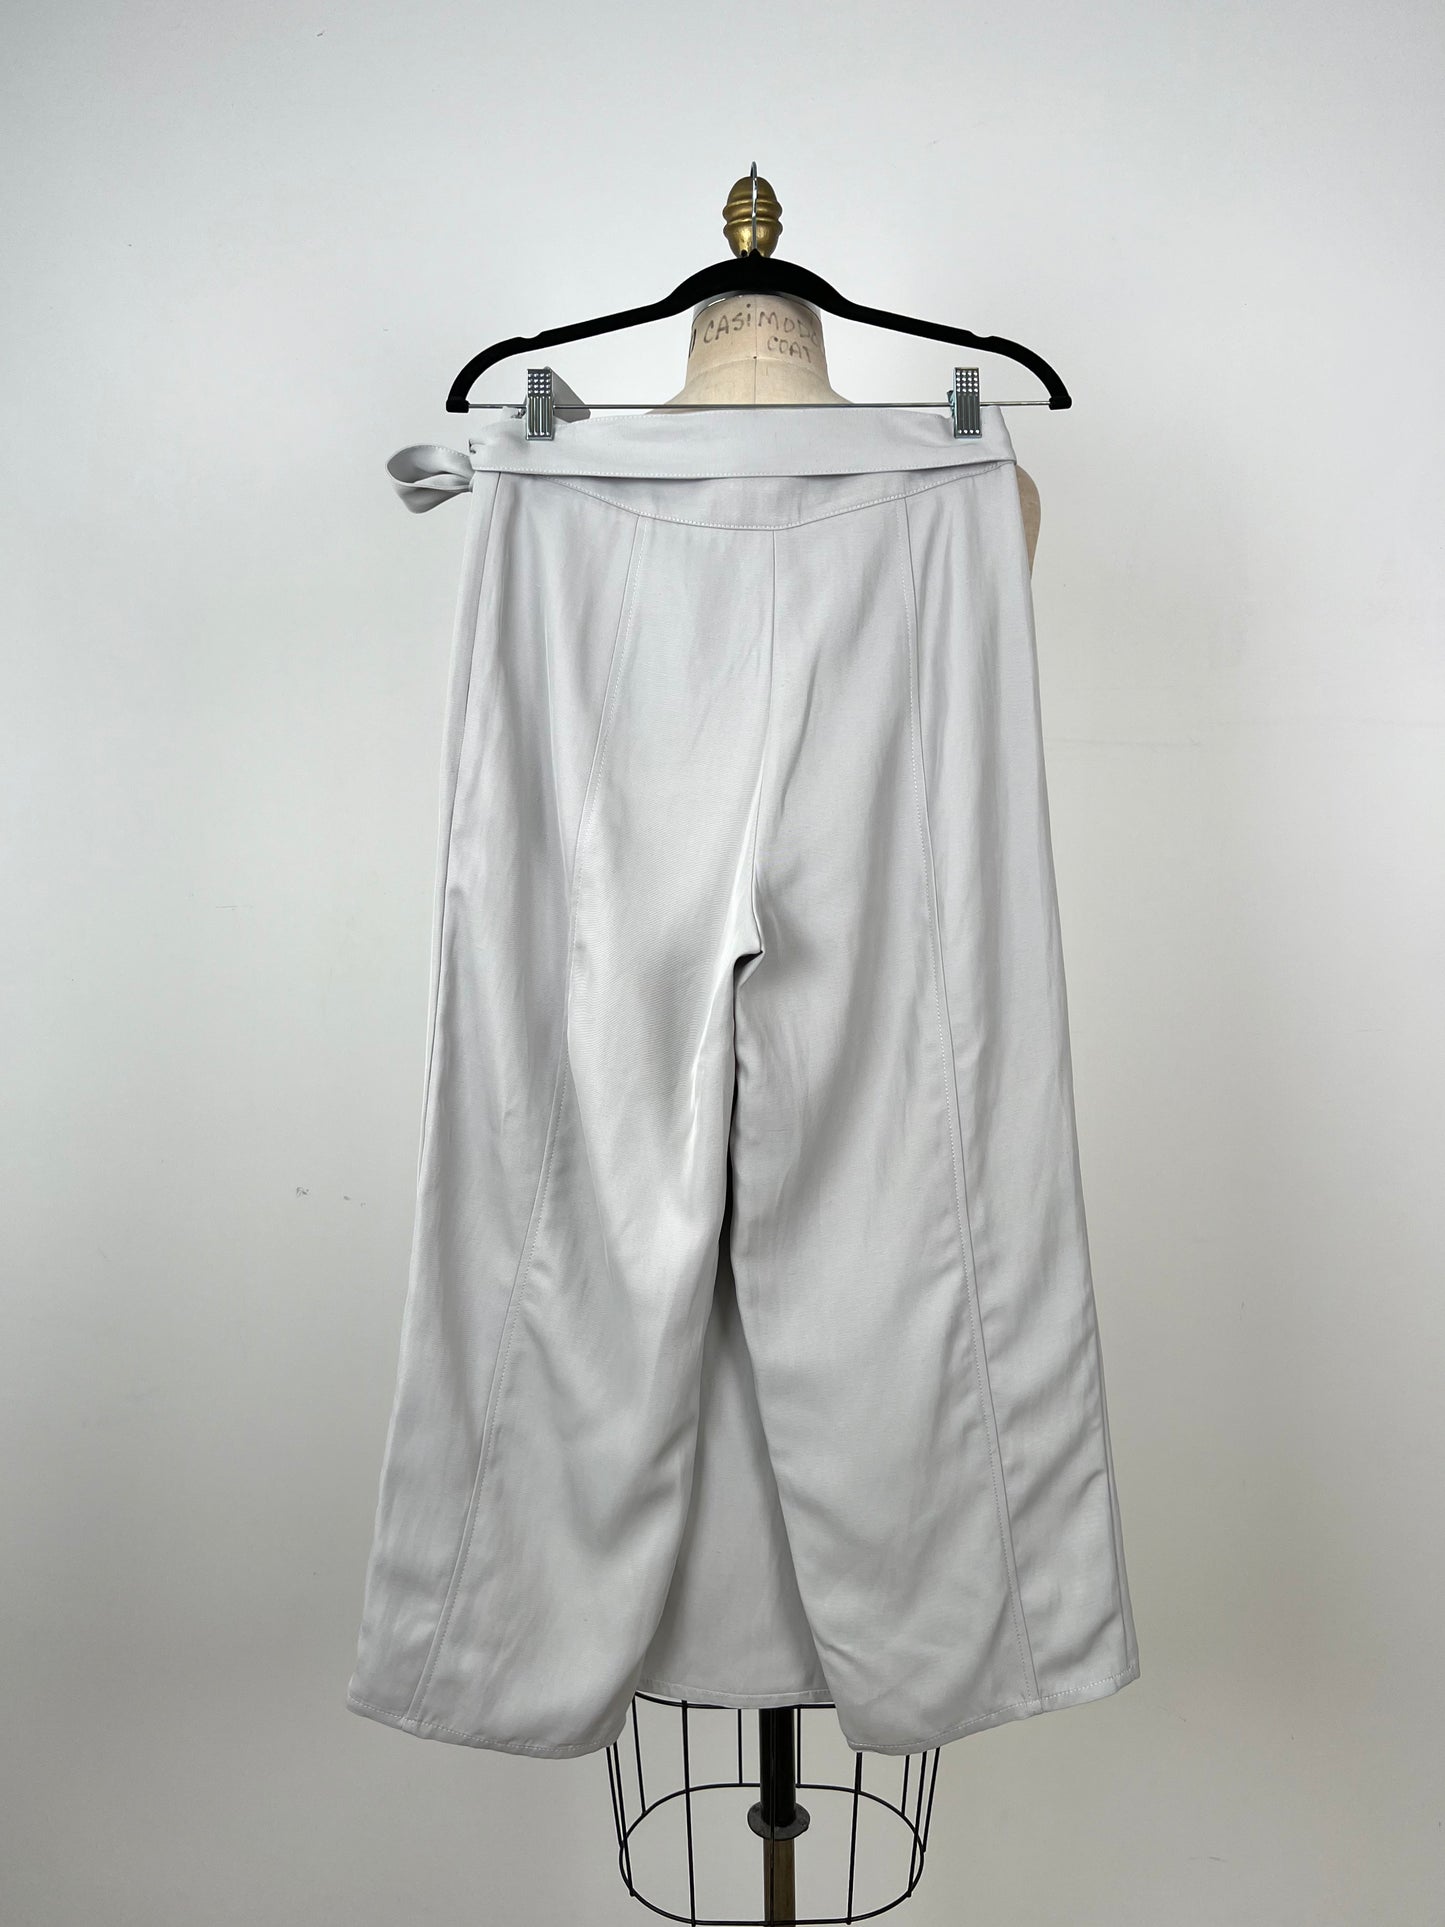 Pantalon écourté à pan de jupe gris bleuté (XS)